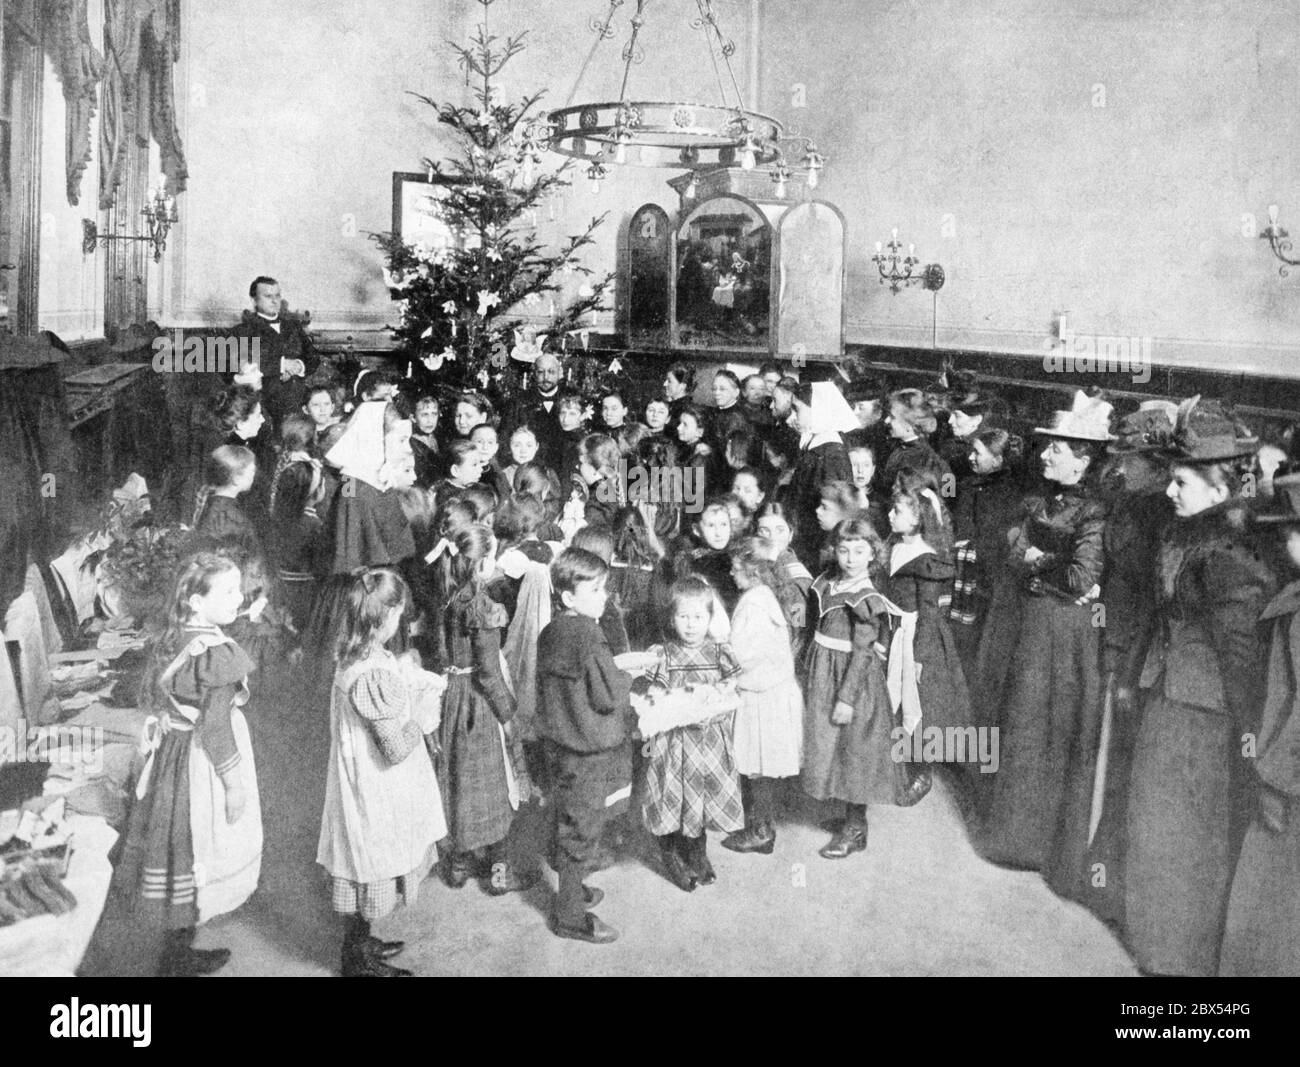 Weihnachtsgeschenke werden von evangelischen Diakoninnen in einem Pfarrhaus der Evangelischen Kirche an arme Berliner Stadtkinder verteilt. Stockfoto